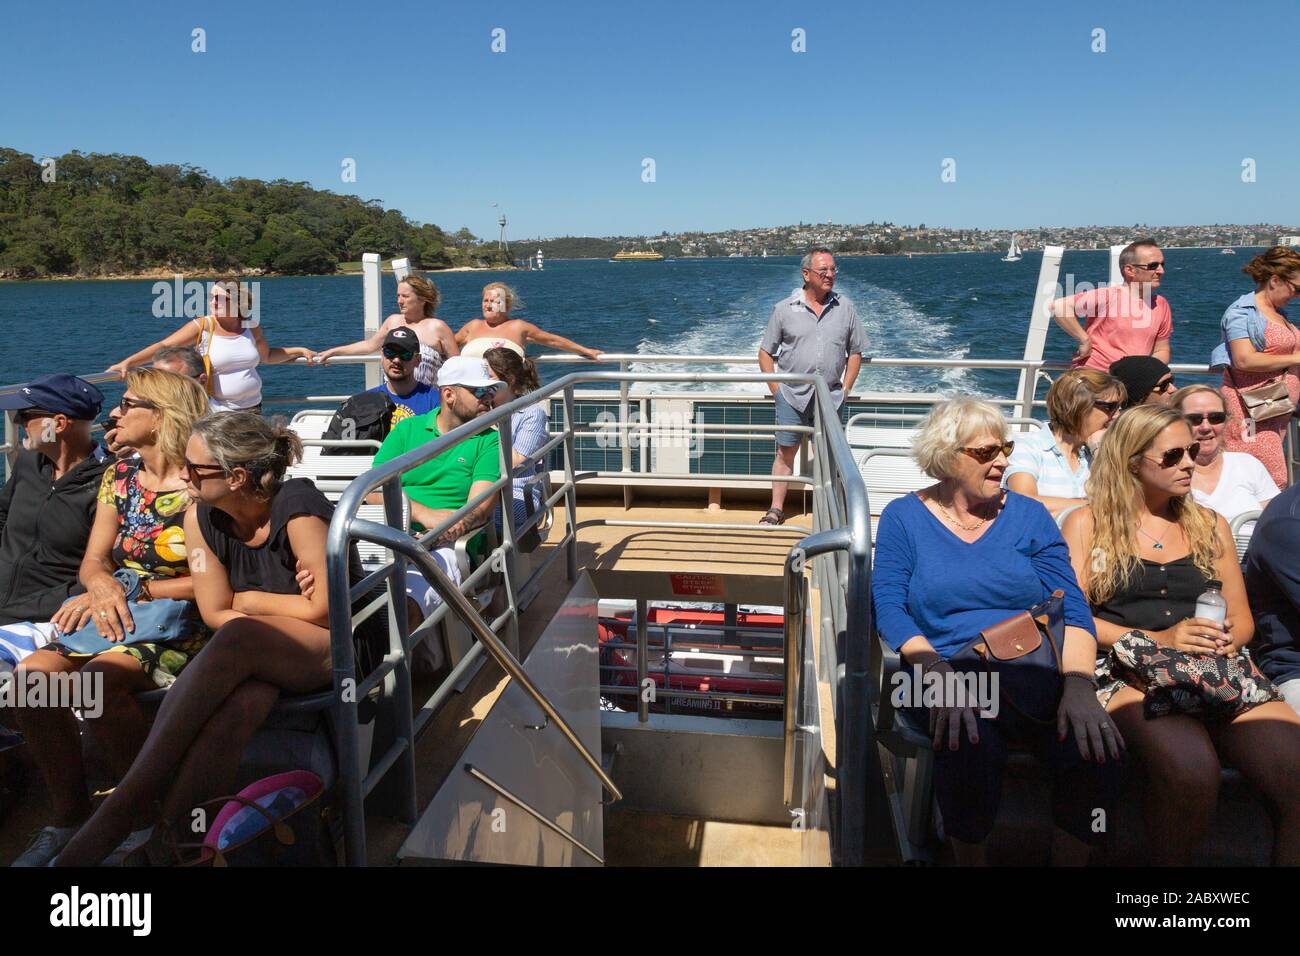 Passagiere der Sydney Fähre, die auf dem Oberdeck einer Sydney Fähre reisen, an einem Sommertag im Hafen von Sydney, Sydney New South Wales Australien Stockfoto